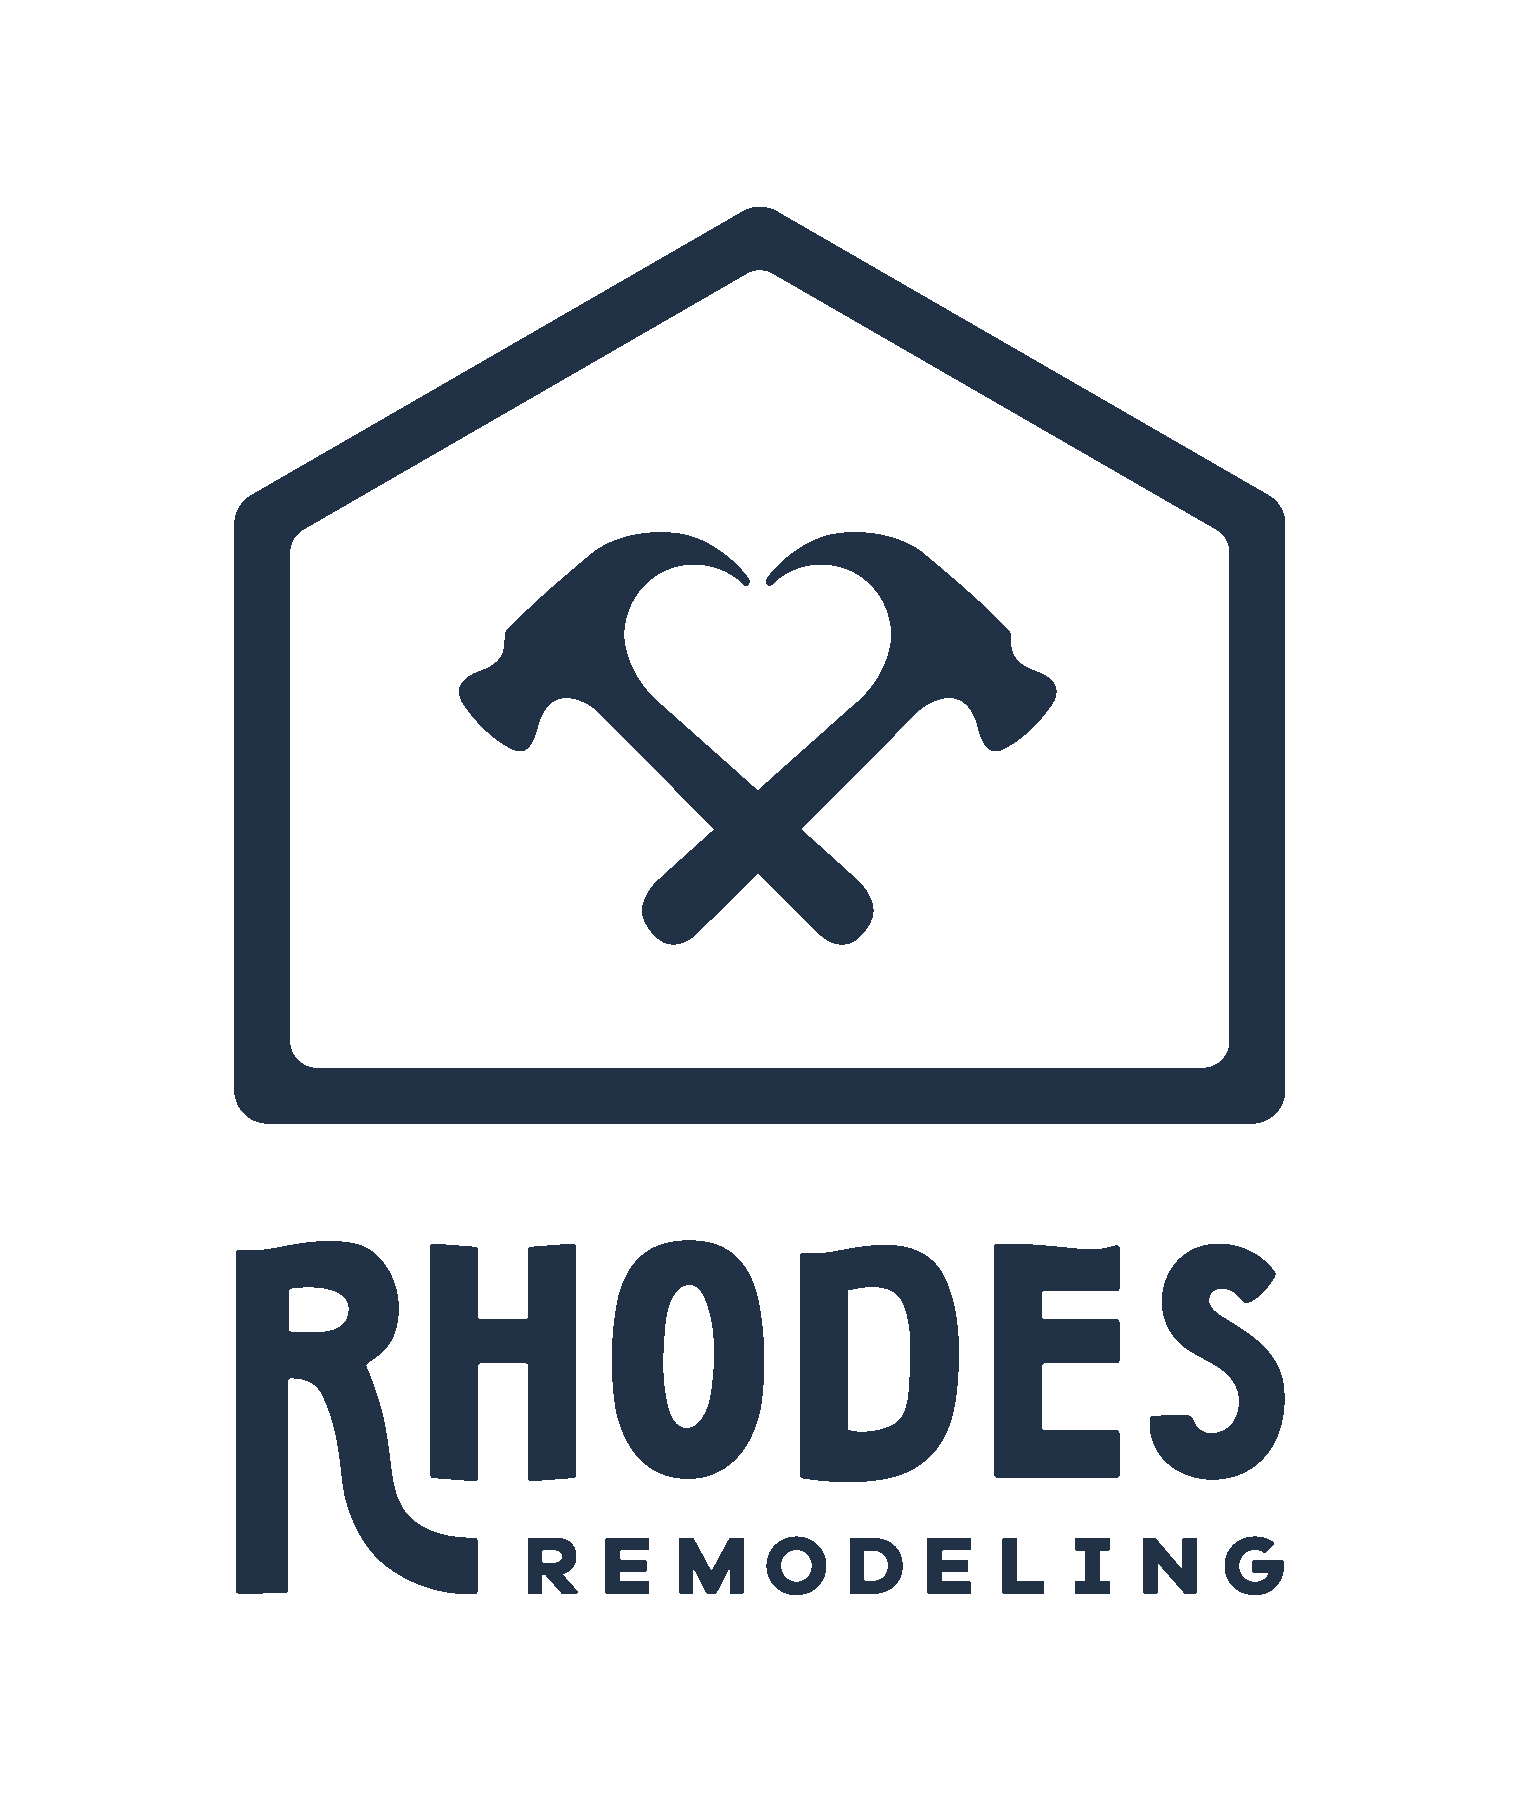 Rhodes Remodeling